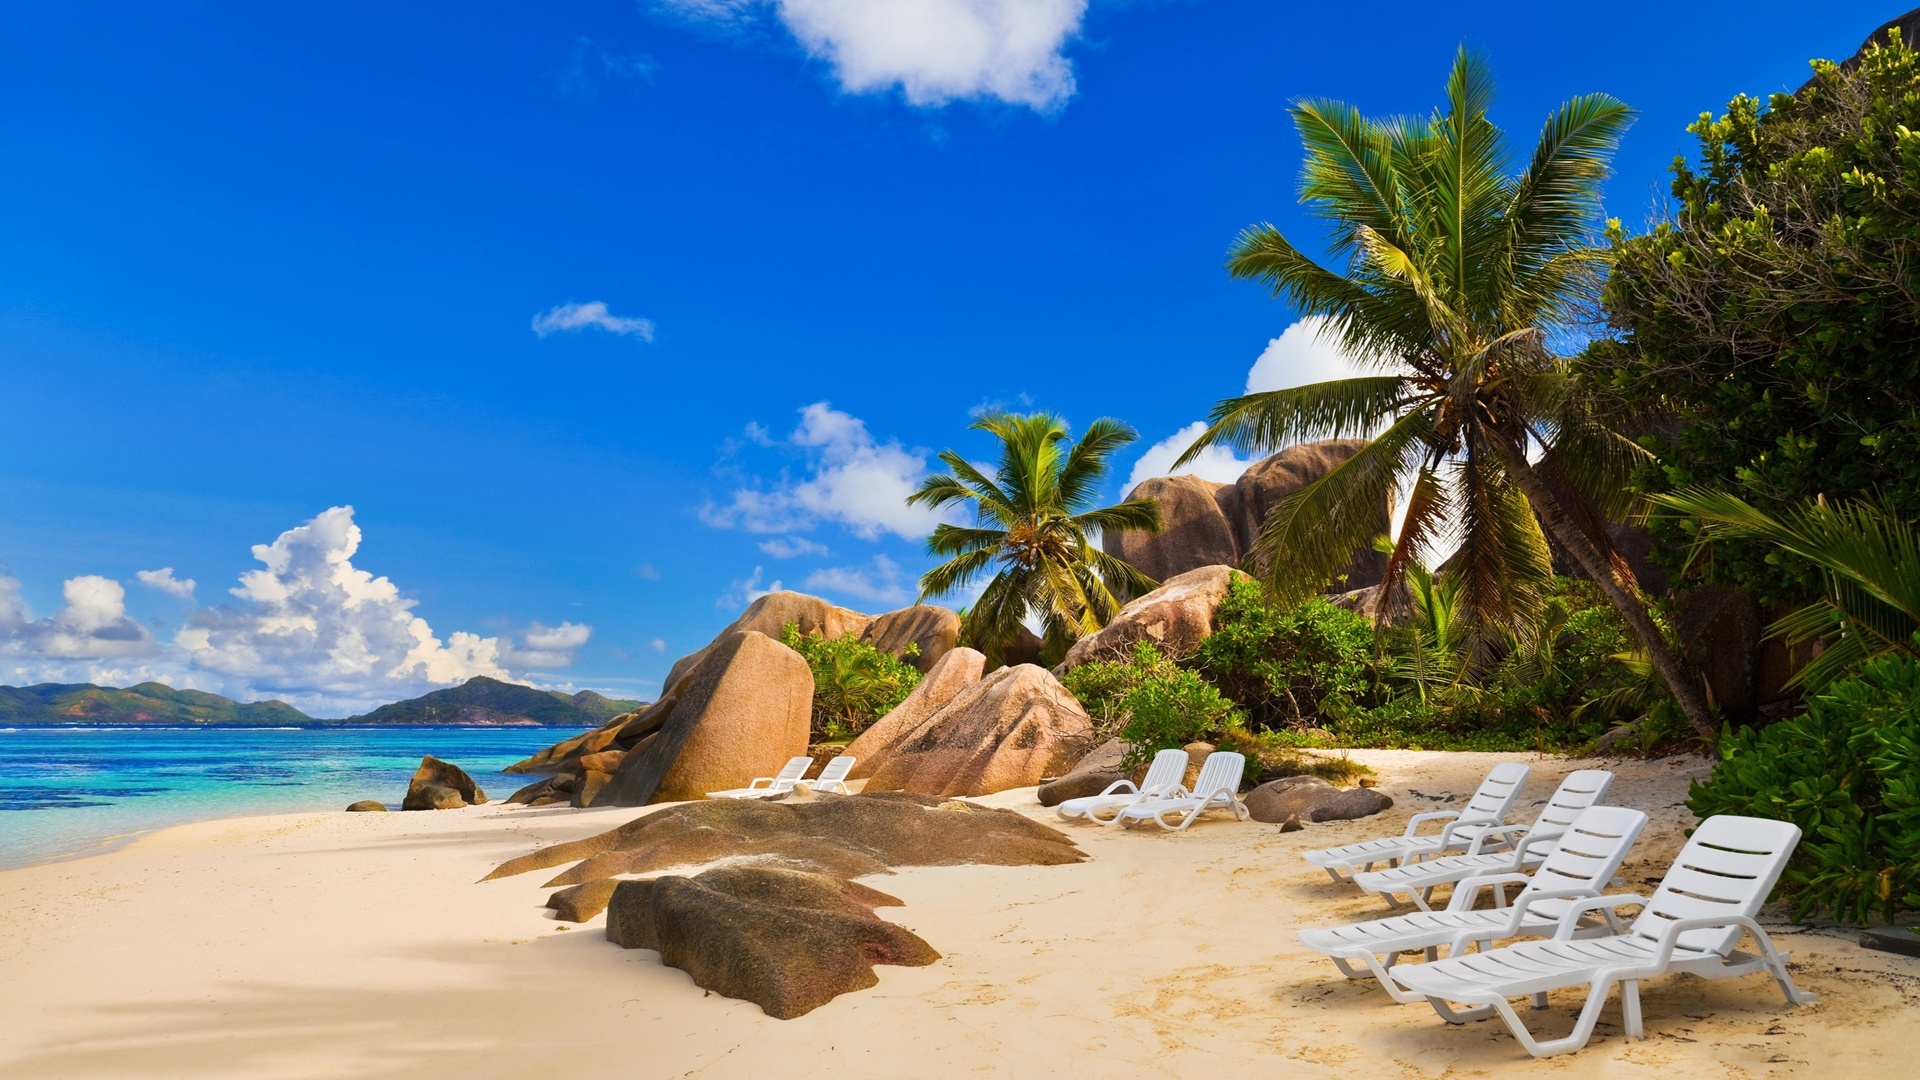 Seychelles Beach Wallpaper 1080p